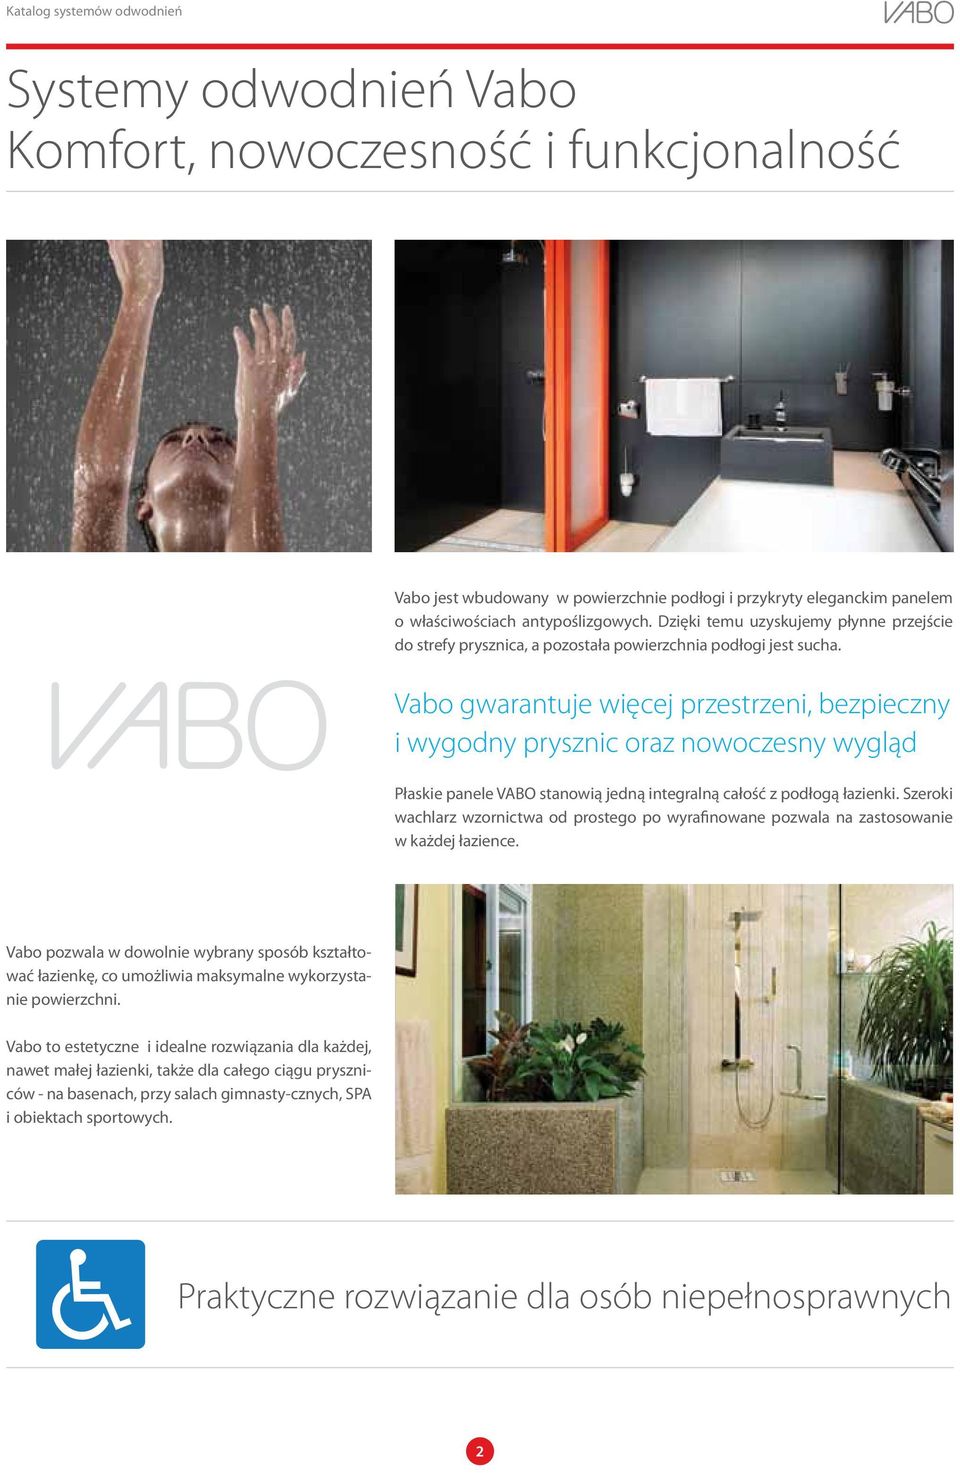 Vabo gwarantuje więcej przestrzeni, bezpieczny i wygodny prysznic oraz nowoczesny wygląd Płaskie panele VABO stanowią jedną integralną całość z podłogą łazienki.